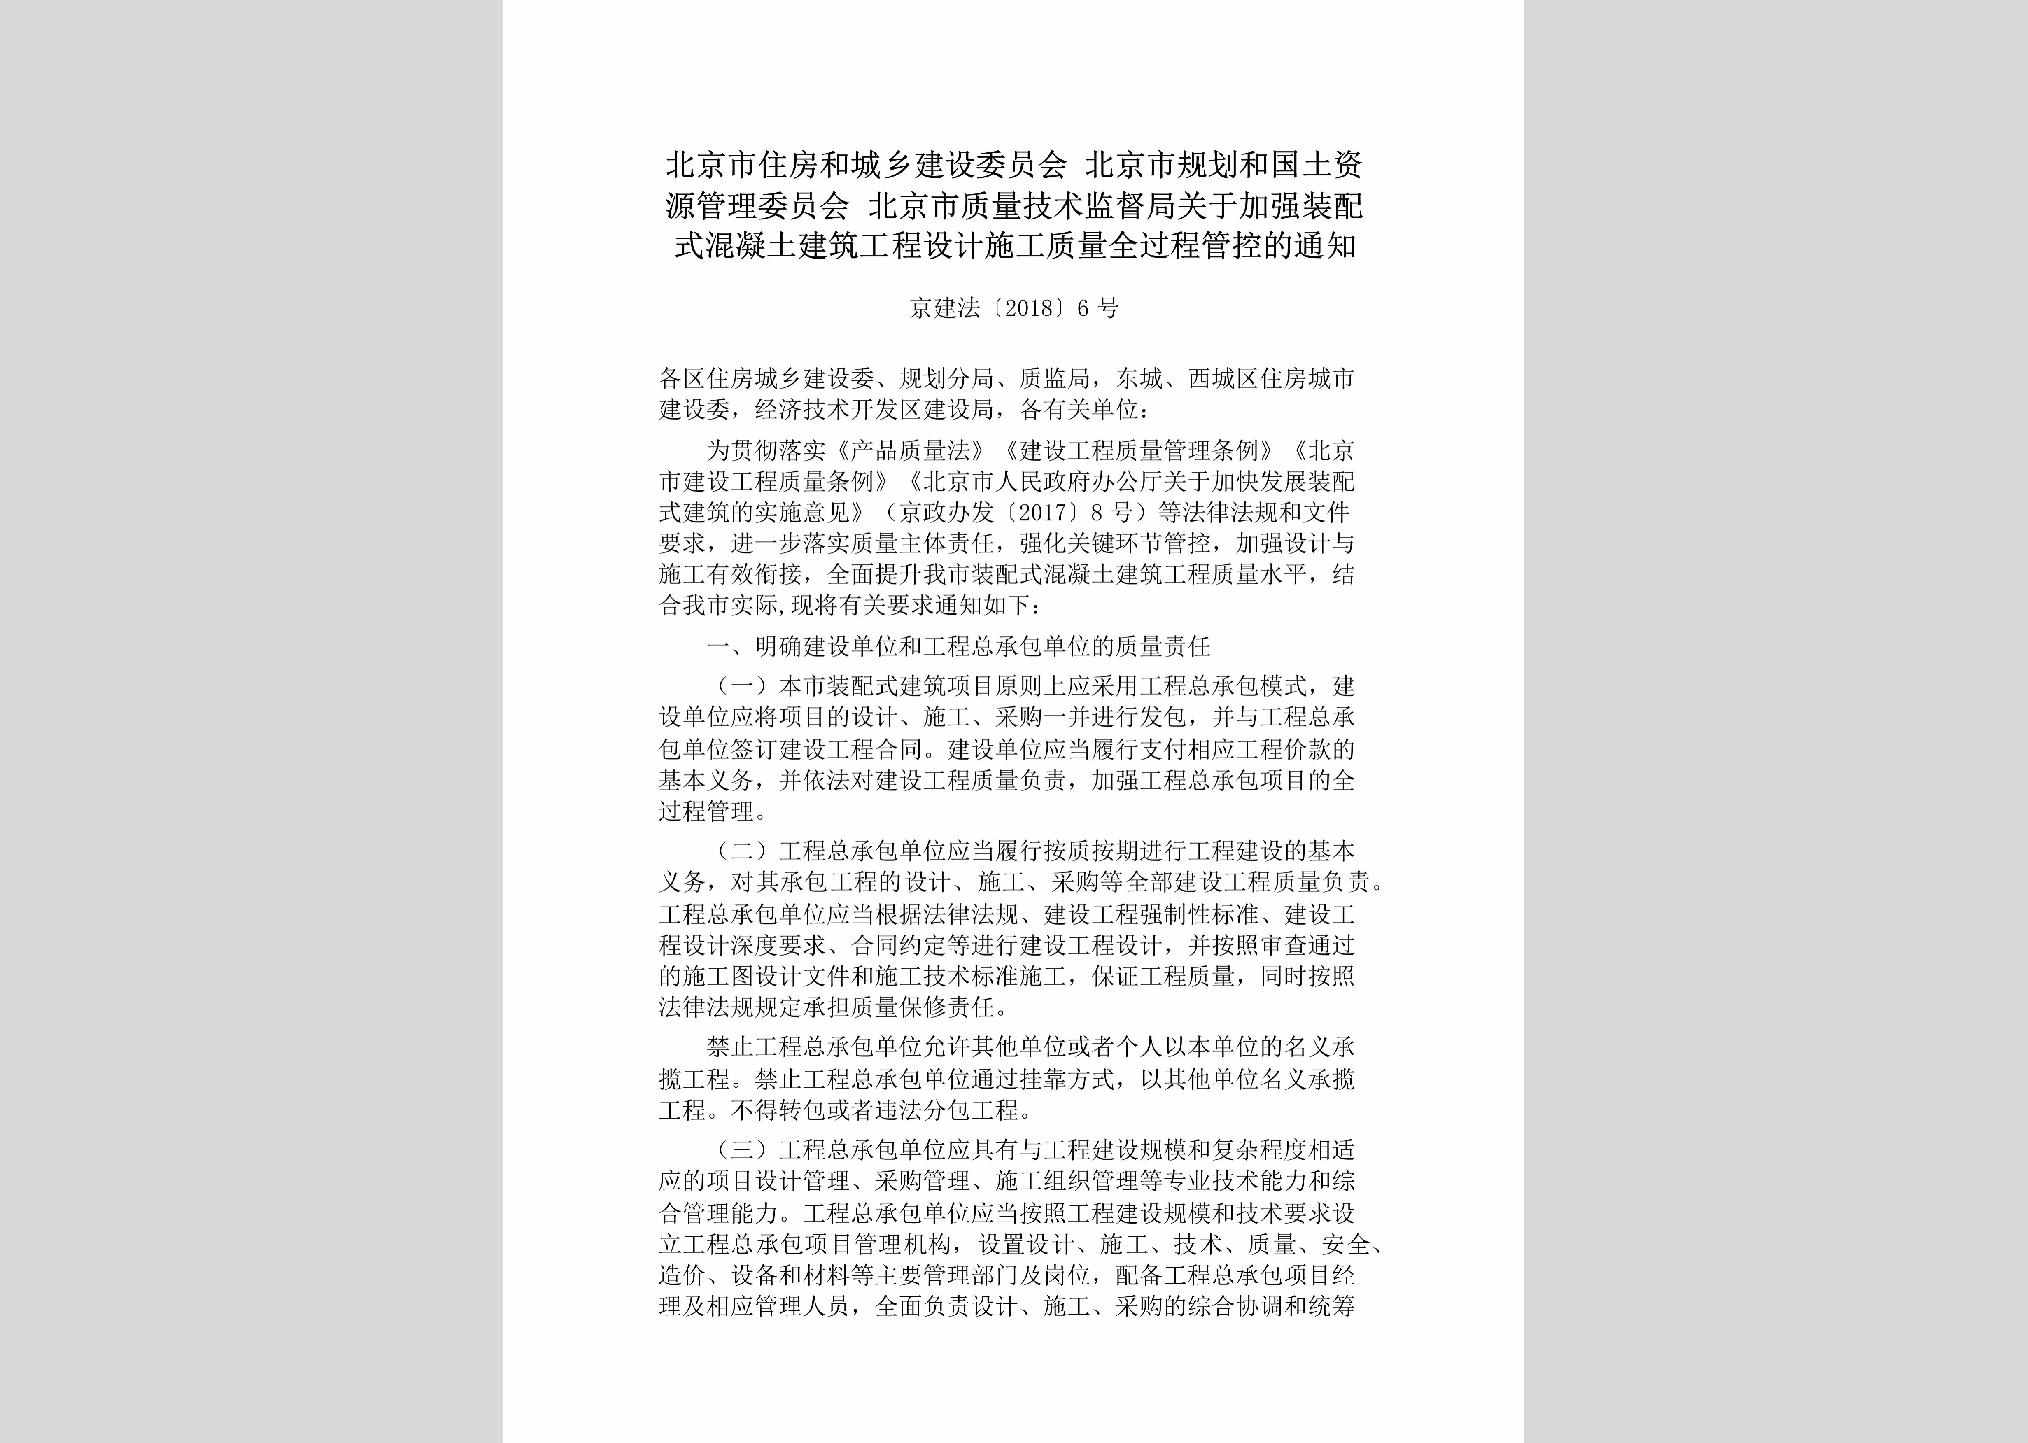 京建法[2018]6号：北京市住房和城乡建设委员会北京市规划和国土资源管理委员会北京市质量技术监督局关于加强装配式棍凝土建筑工程设计施工质量全过程管控的通知